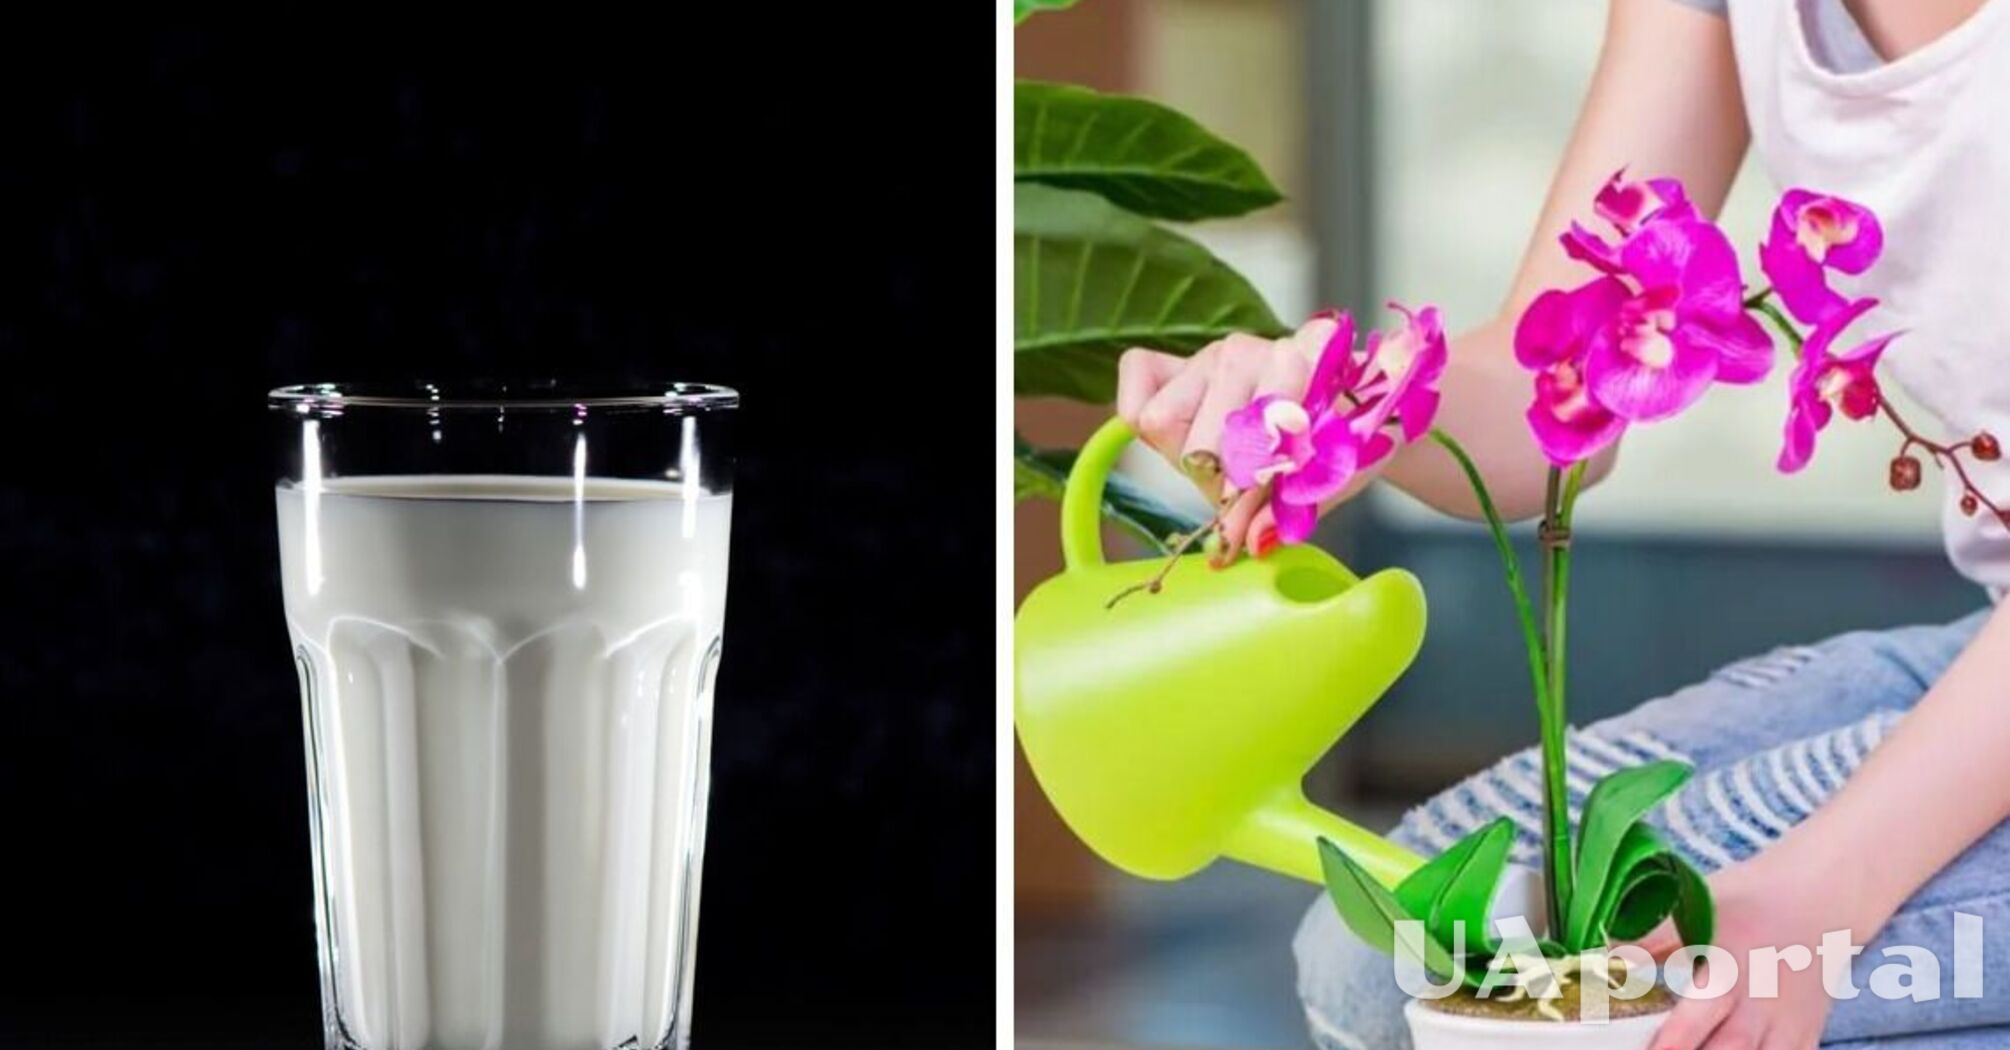 Цветы будут расти быстрее: Как подкармливать растения йогуртом